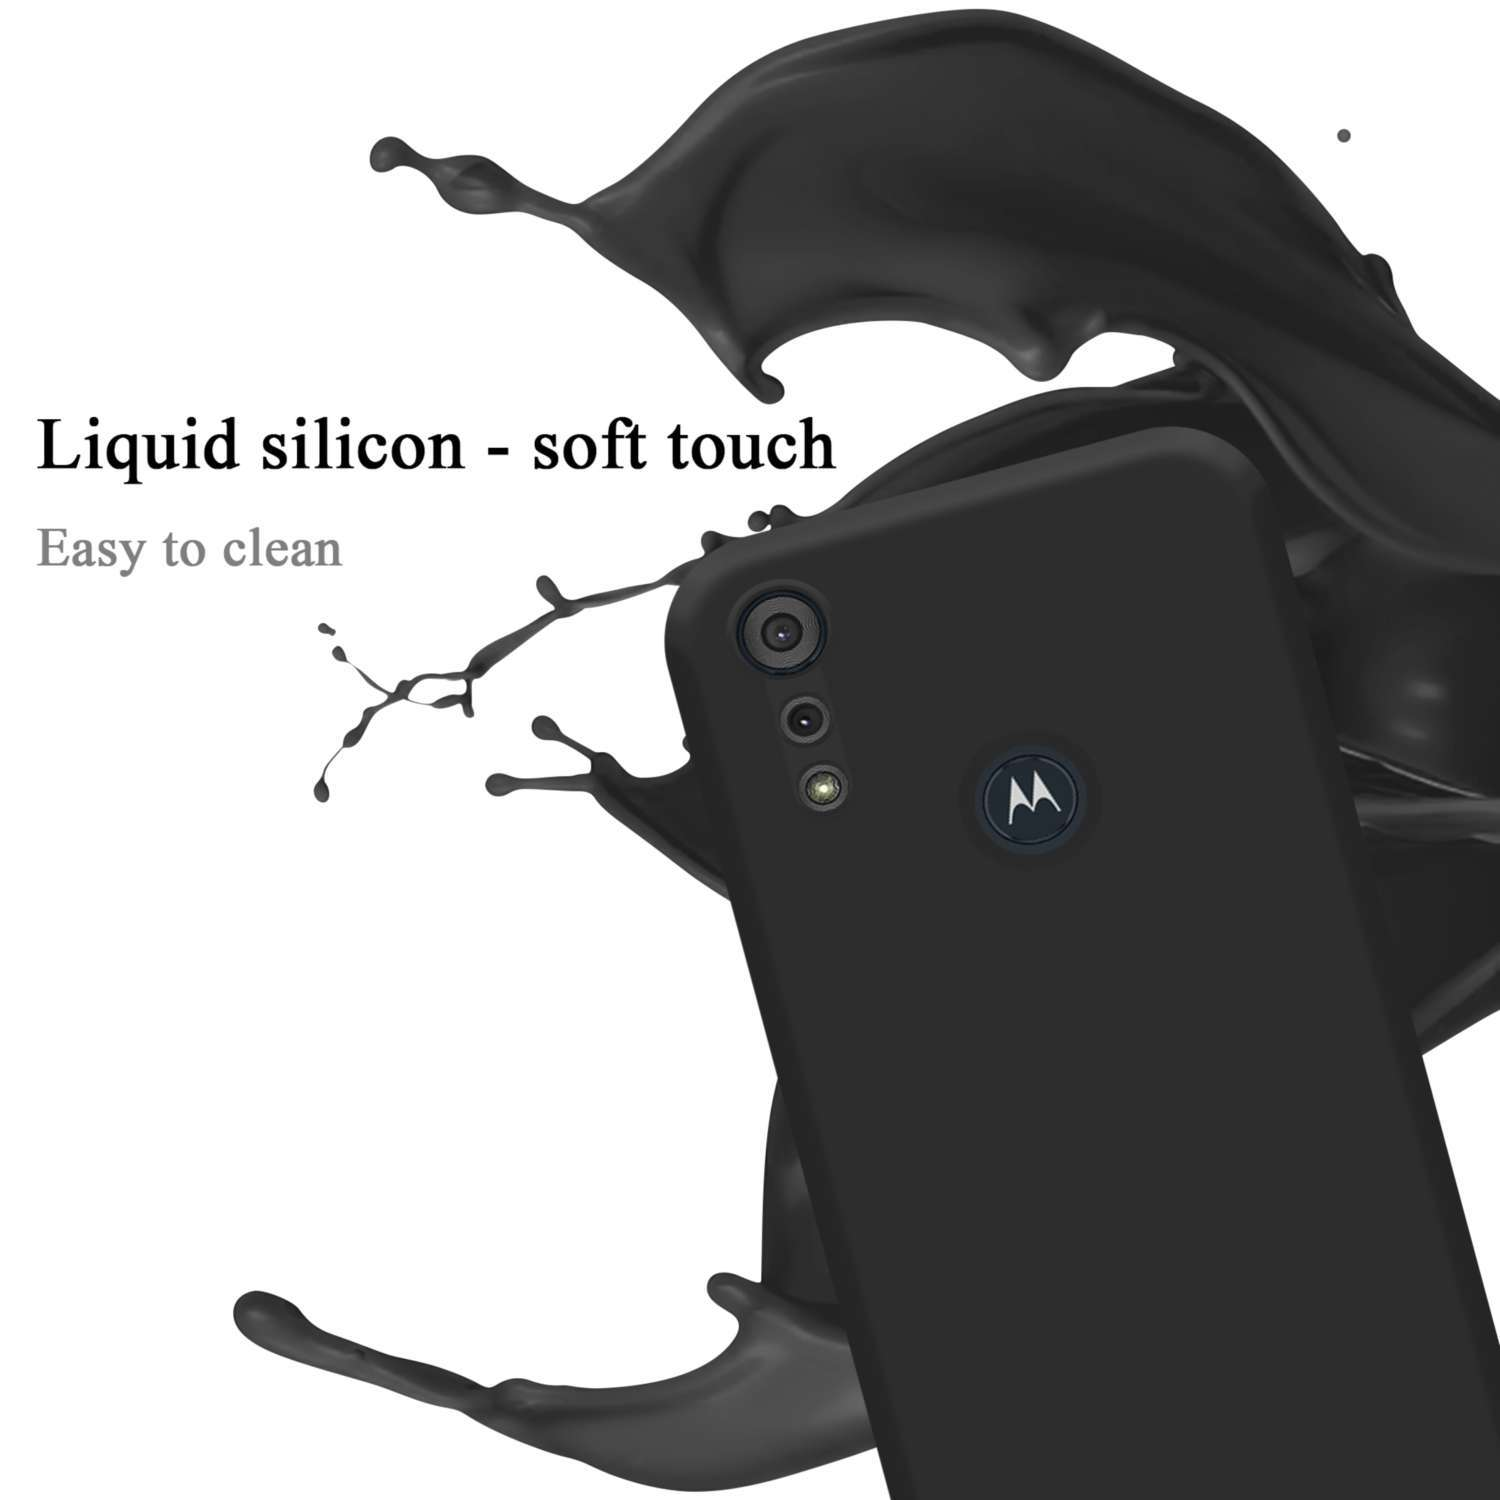 CADORABO Hülle im Liquid Silicone 2020, E6s Case MOTO Backcover, SCHWARZ Motorola, LIQUID Style